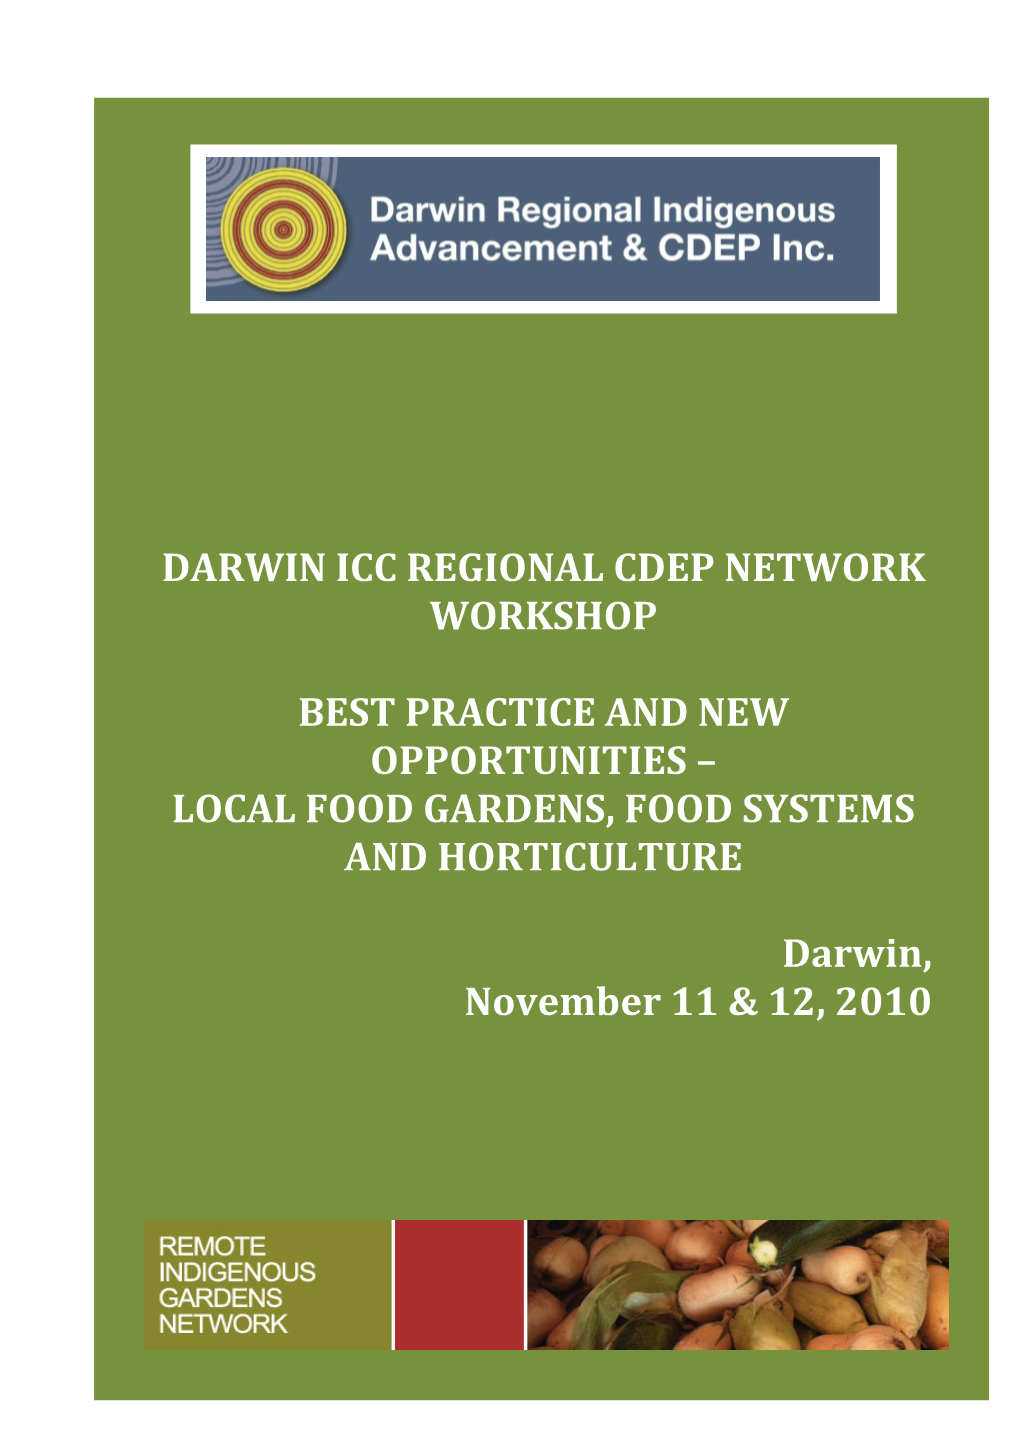 Darwin ICC Regional CDEP WORKSHOP